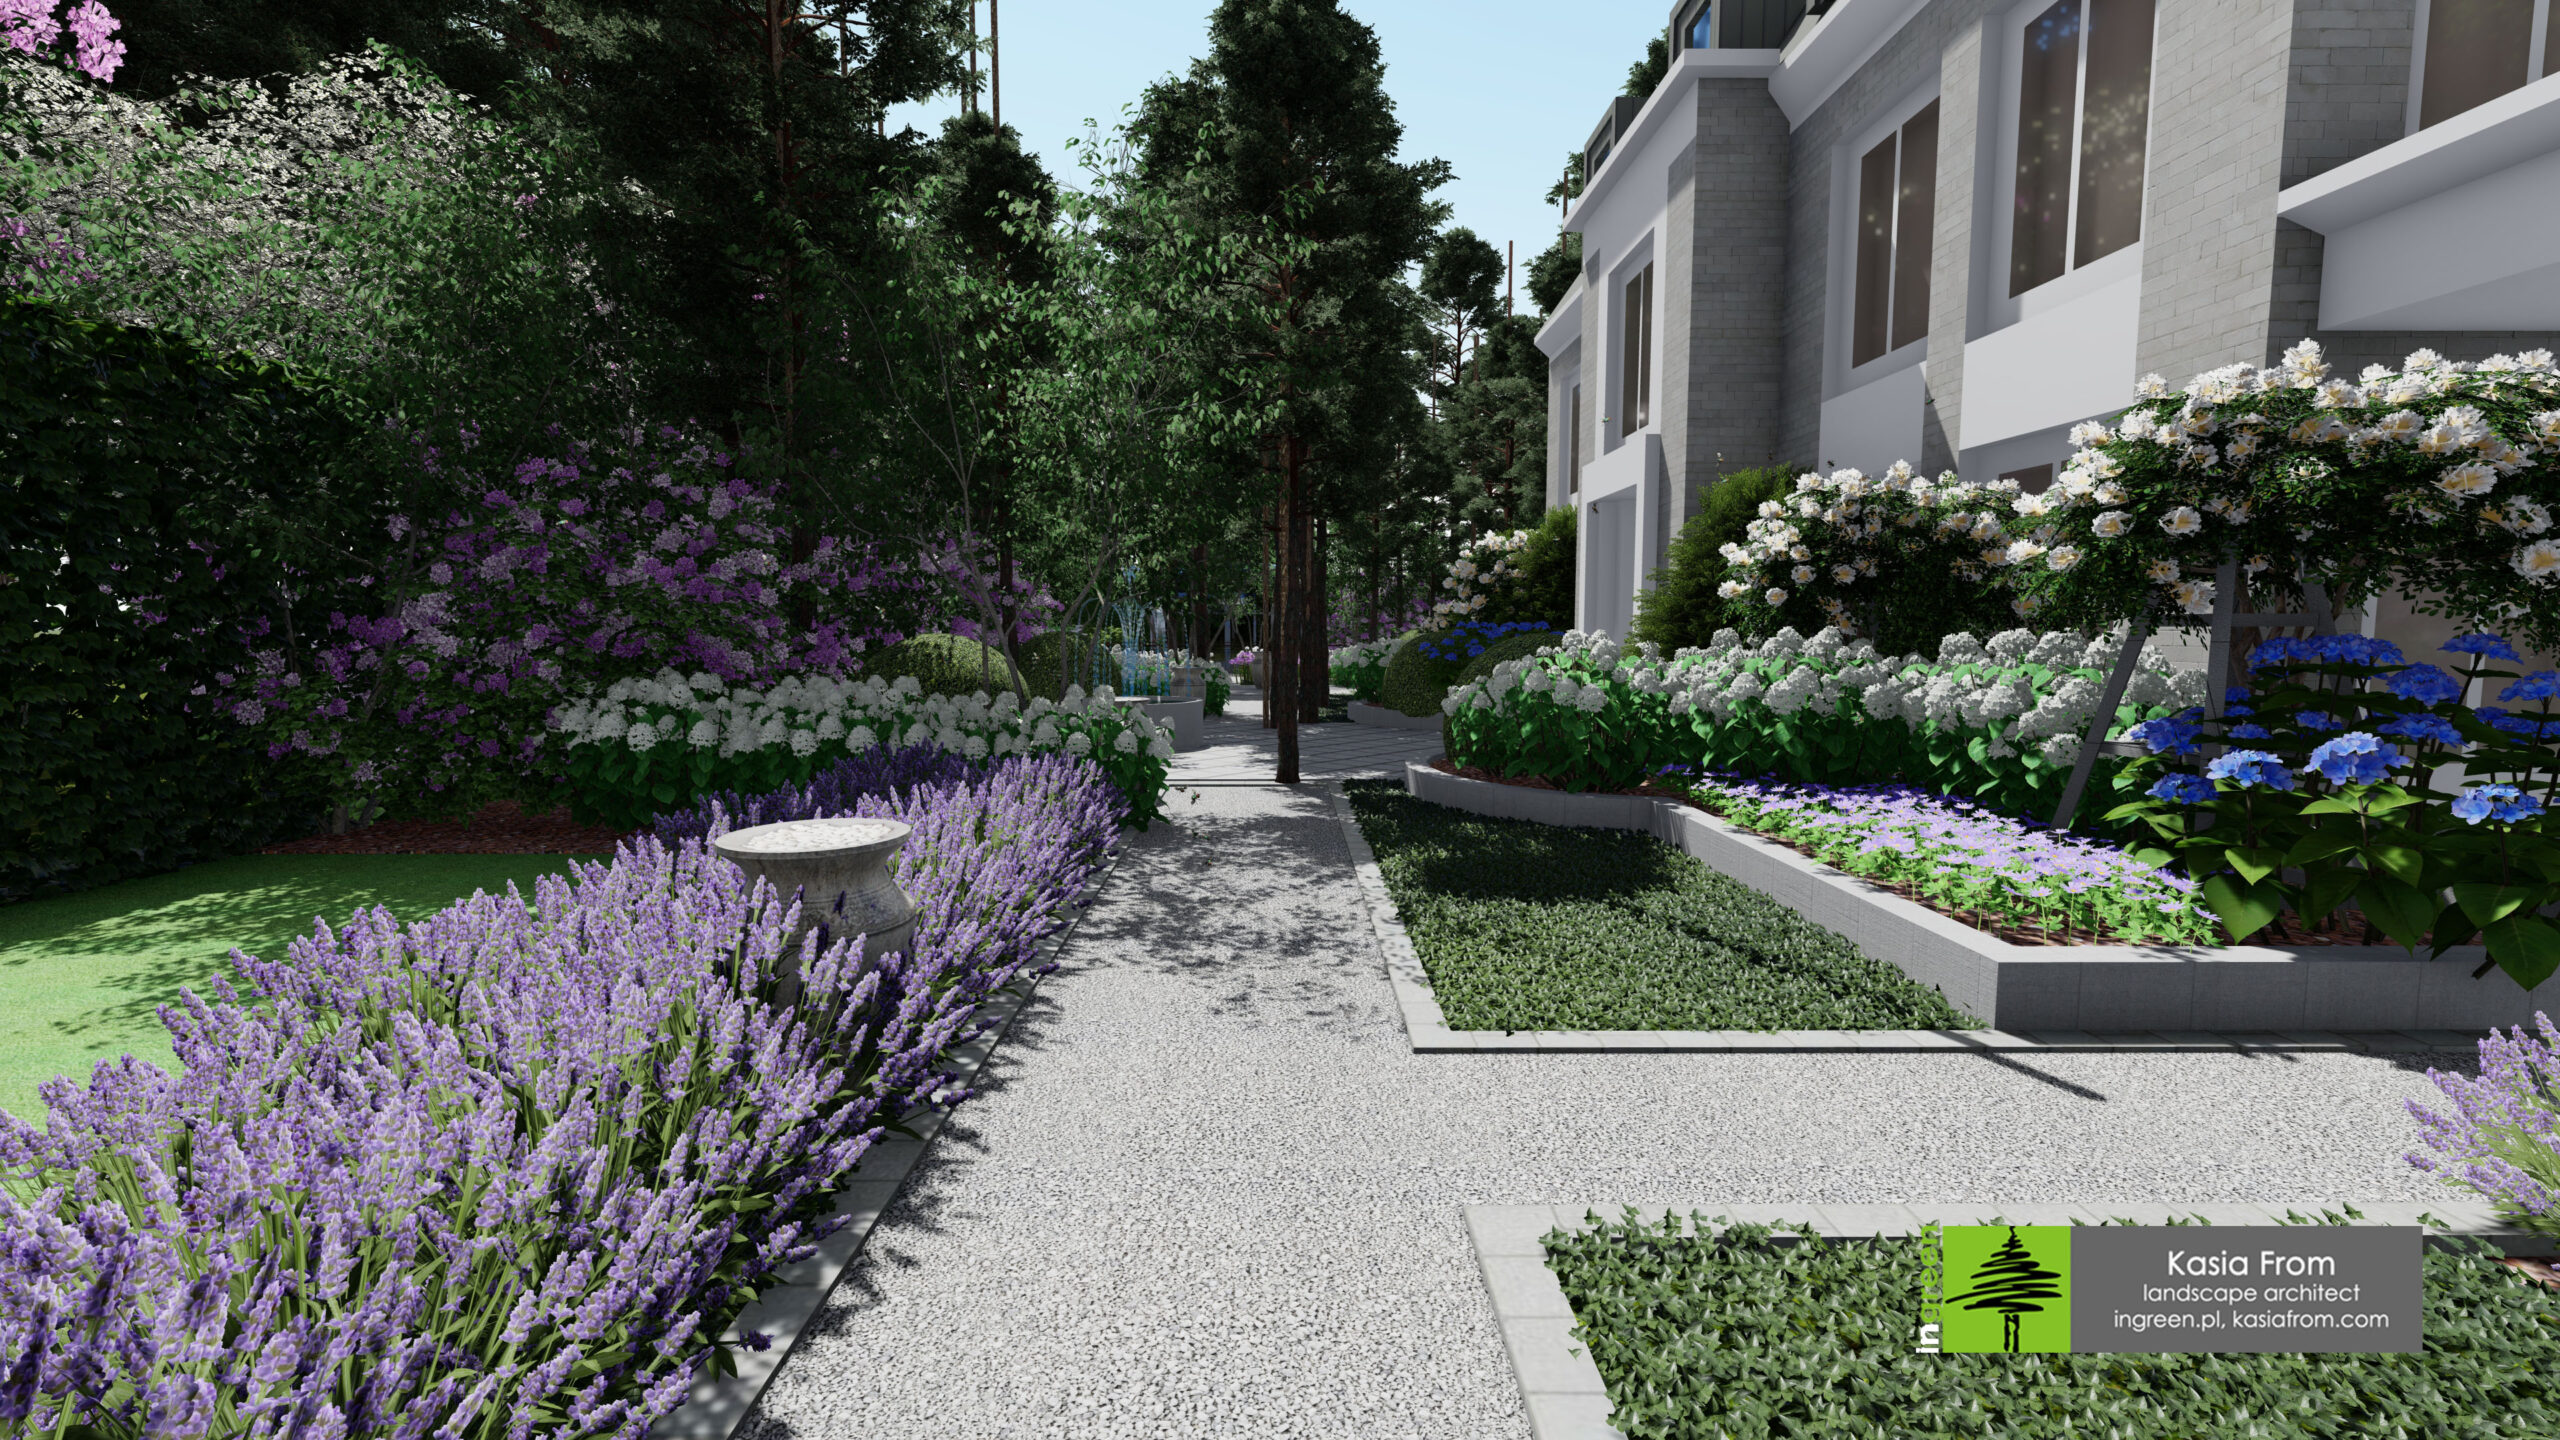 ogród francuski kasiafrom ogrody warszawa architekt nowoczesnyogrod projektogrodu projektyogrodow projektantogrodow modern garden design ogrod wizu9